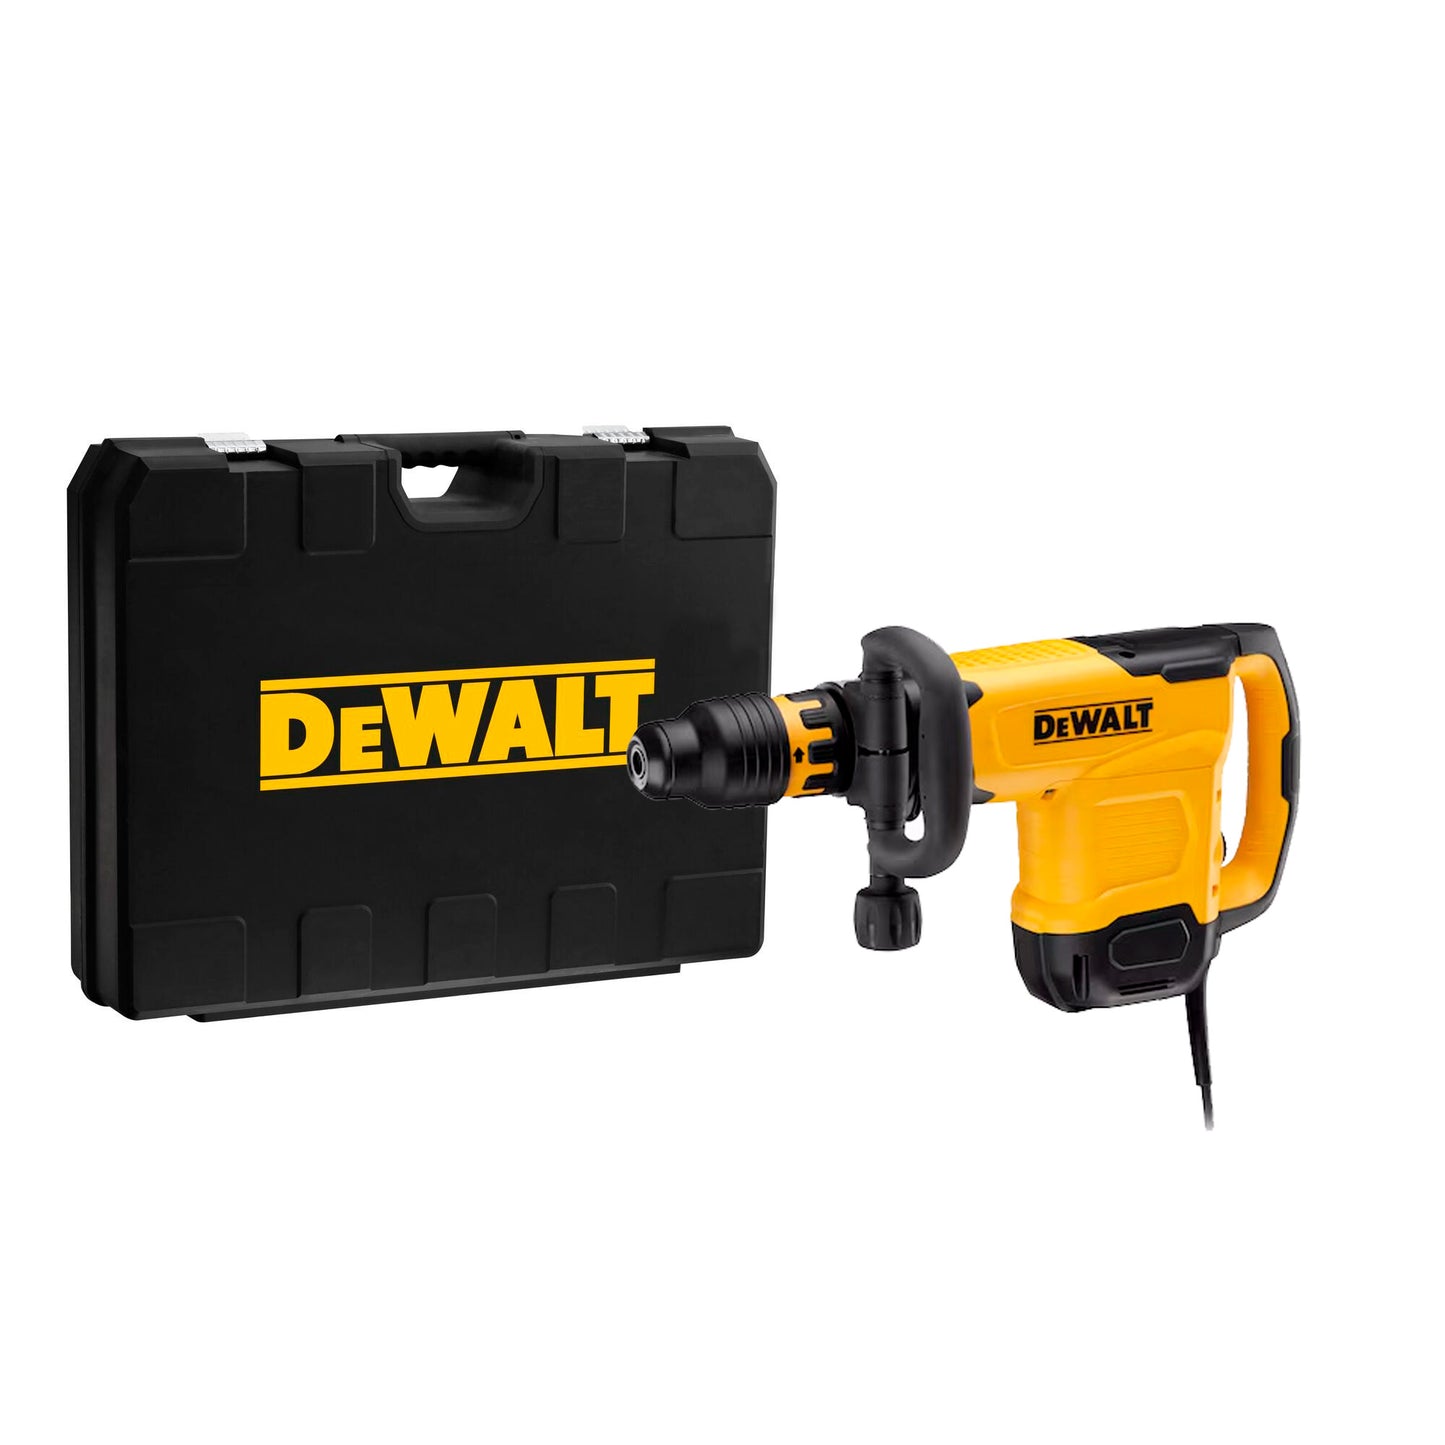 Dewalt SDS-Max 17.5J 1600W Demolition Hammer with case D25881K-QS